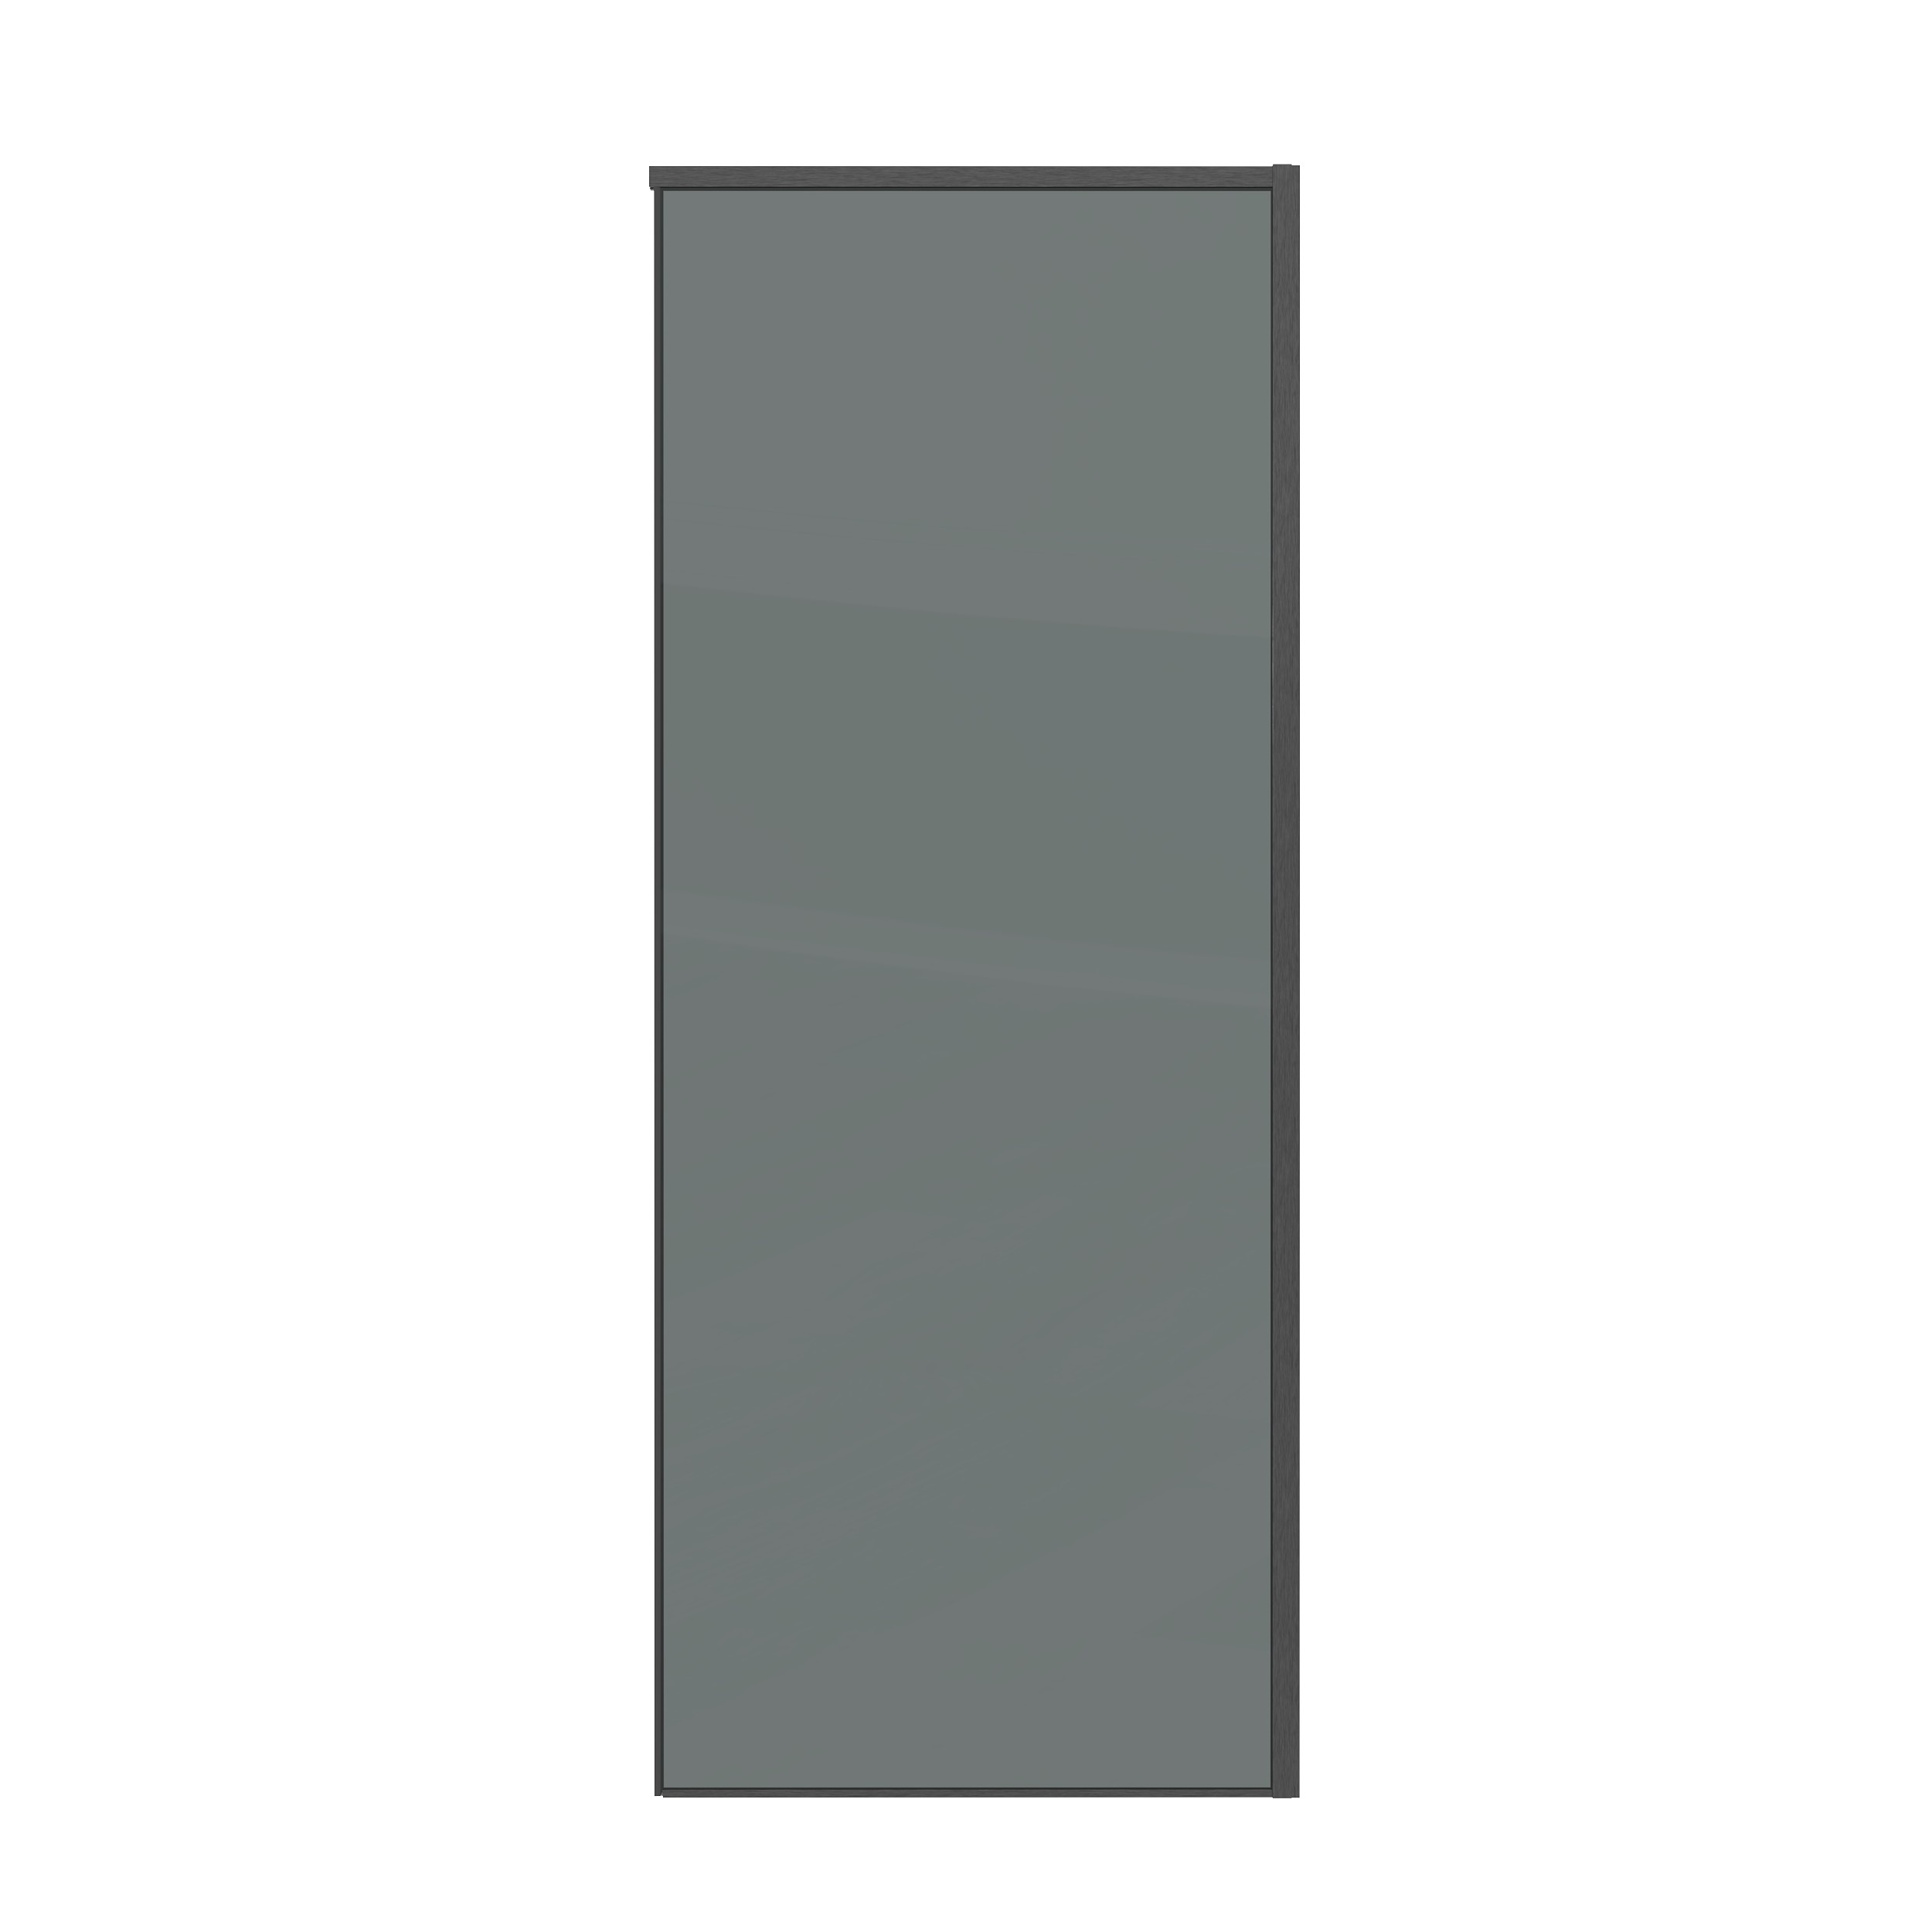 Боковая стенка Grossman Galaxy 90x195 200.K33.01.90.42.10 стекло тонированное, профиль графит